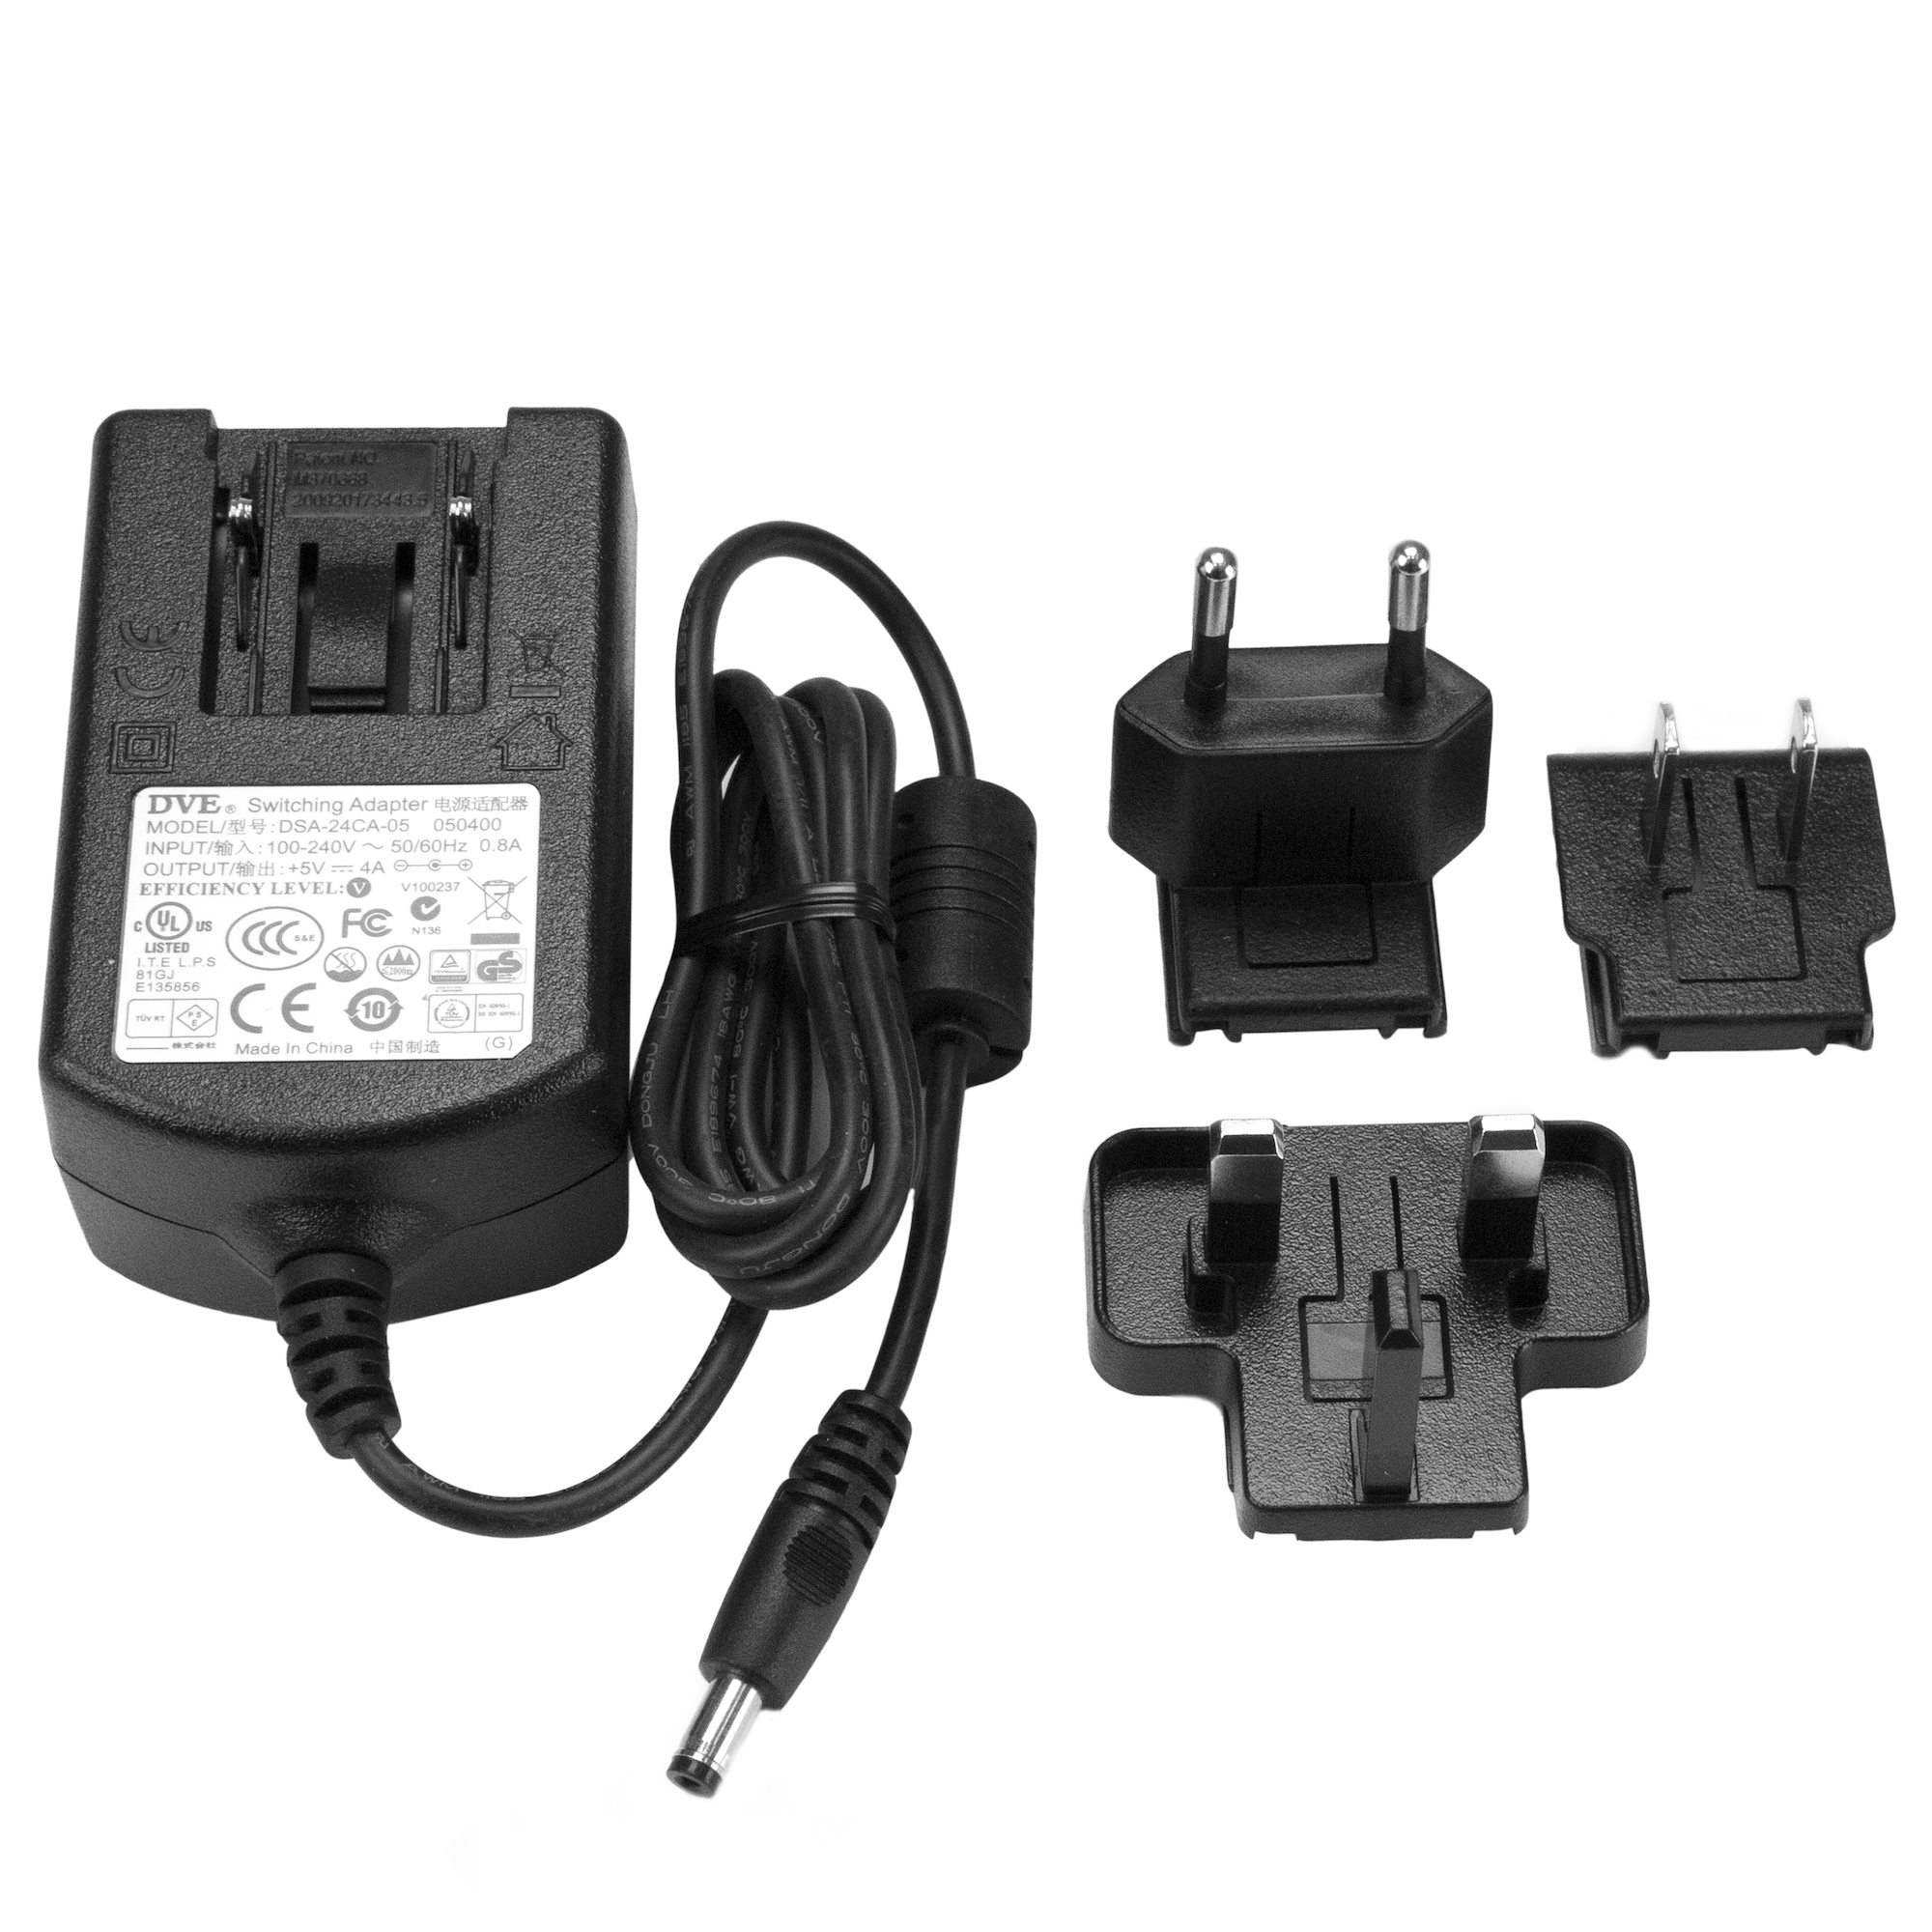 New AC power Adapter supply 12v .35a 4W MU04-8120035-A1 for DYNEX DX-ESW5 HUB 